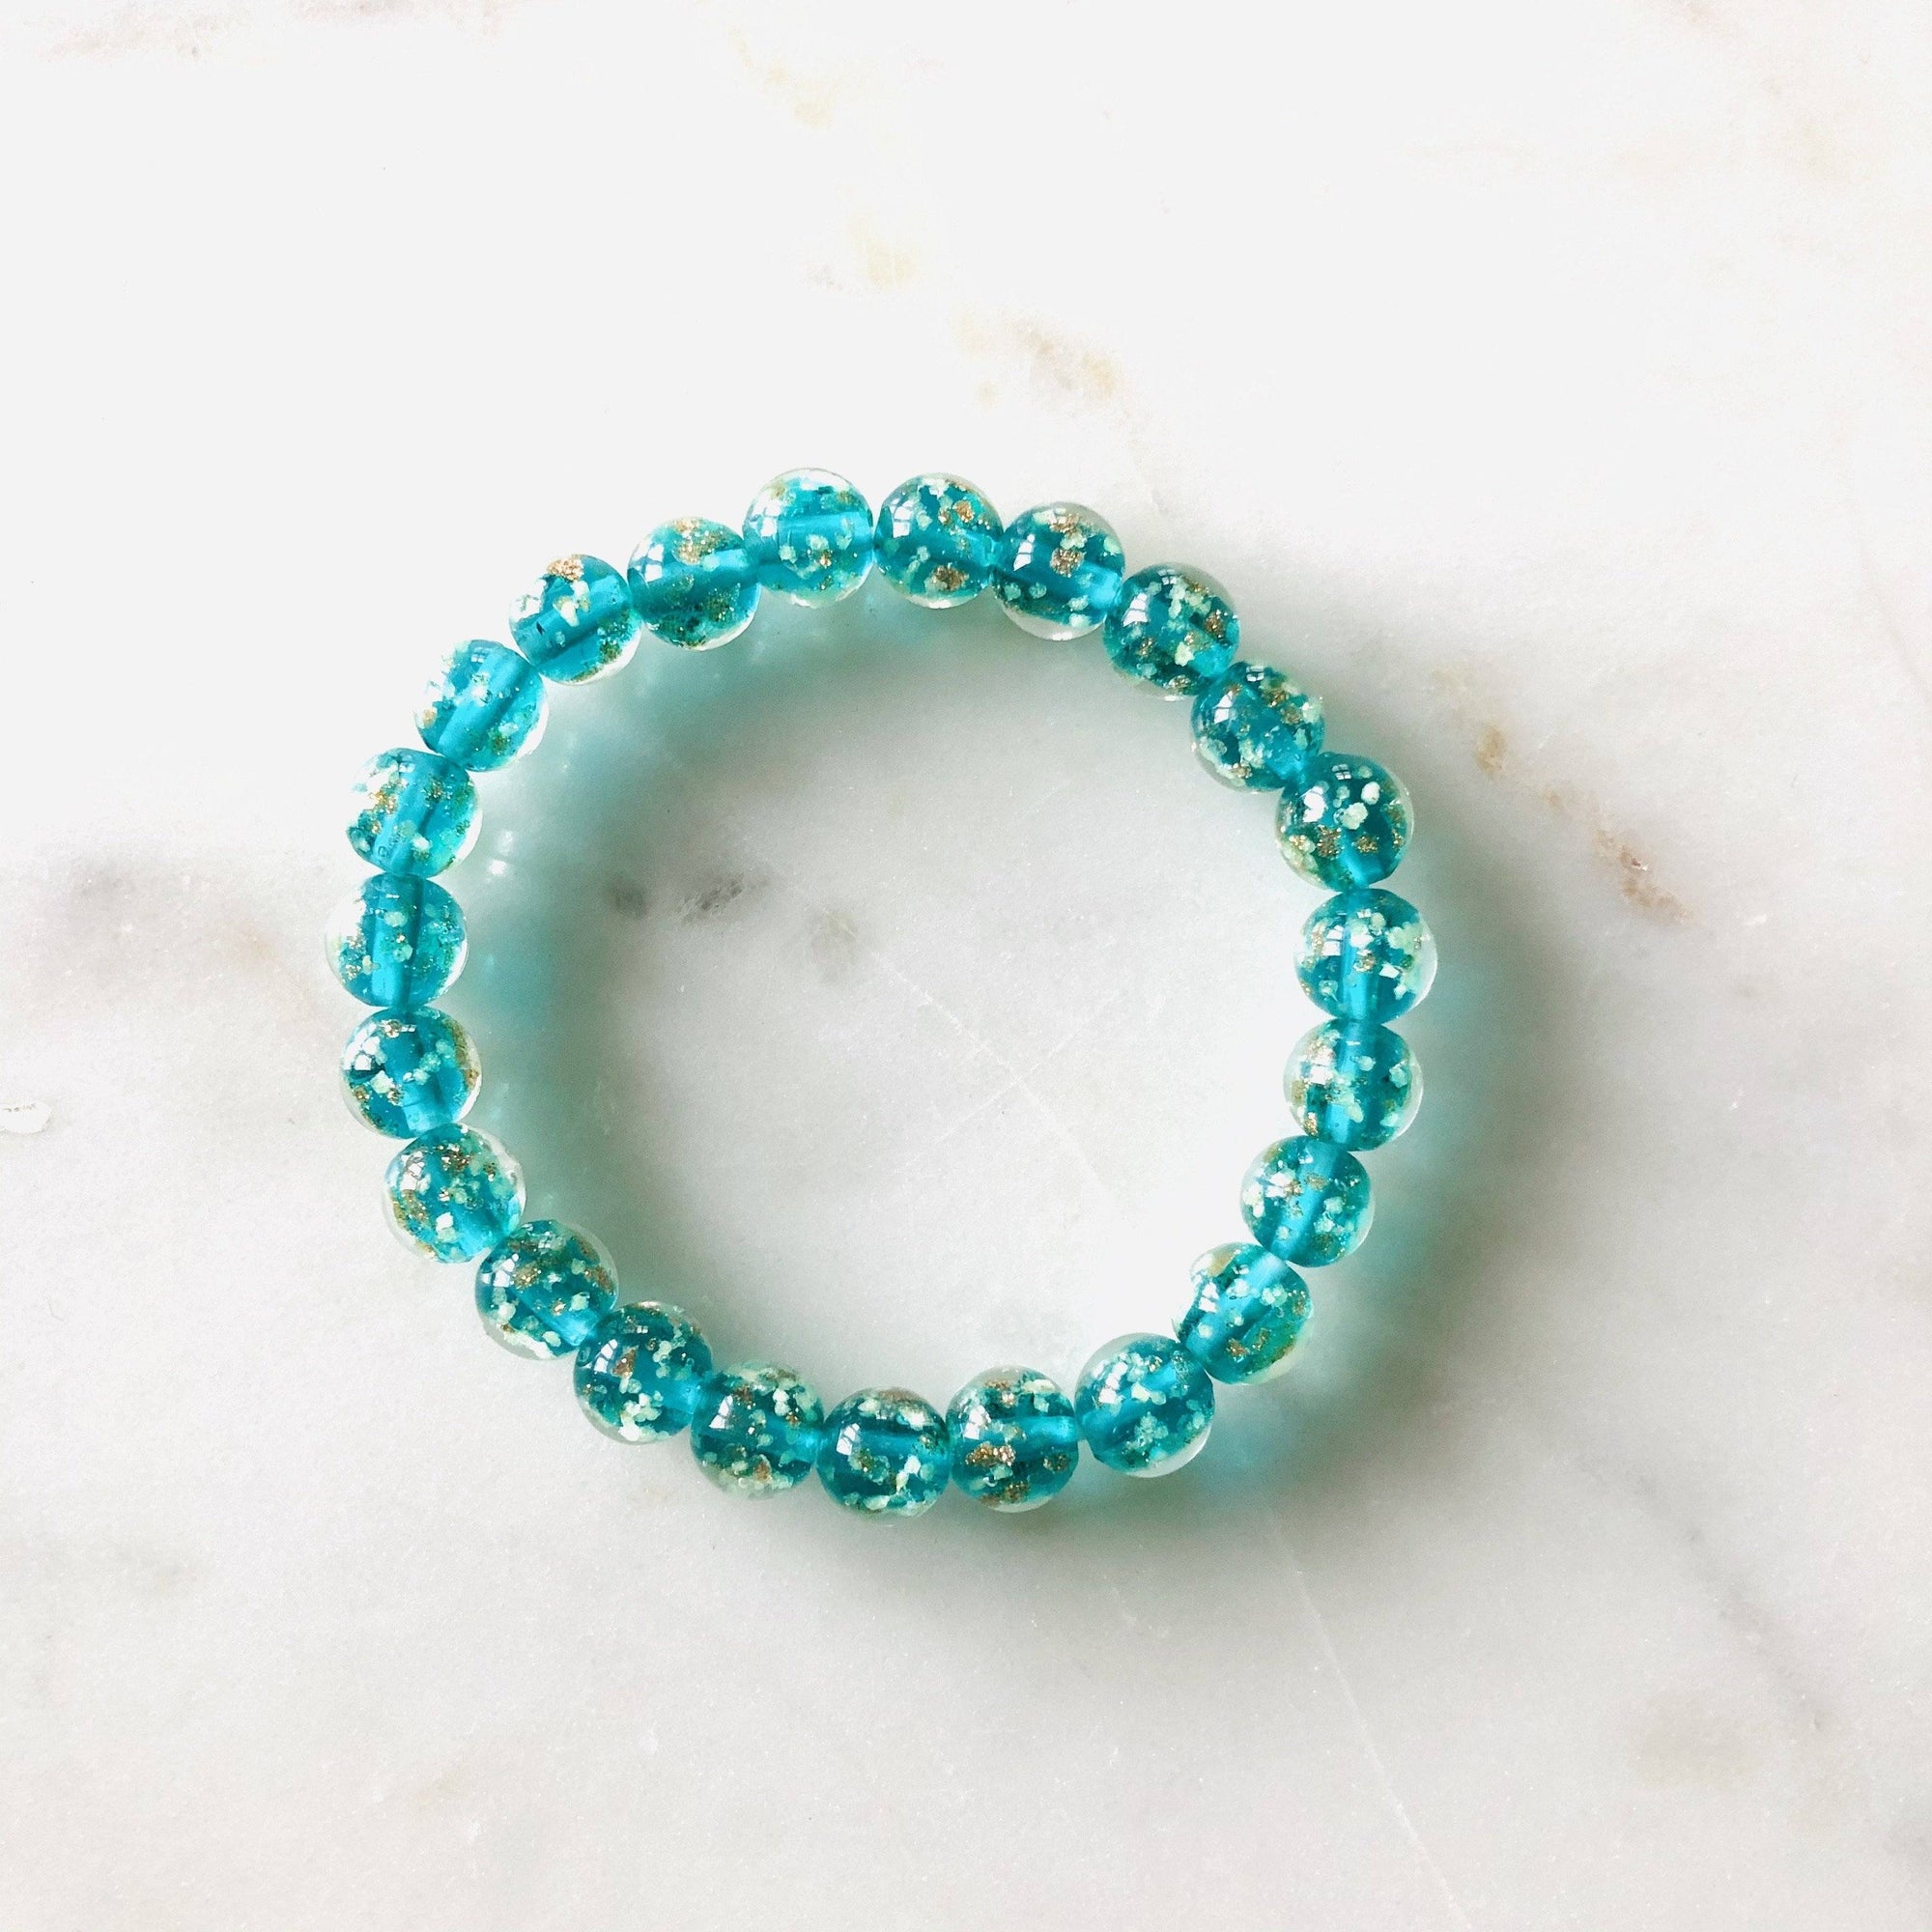 Mermaid Glow Glass Bracelet Jewelry - Teal & Blue 